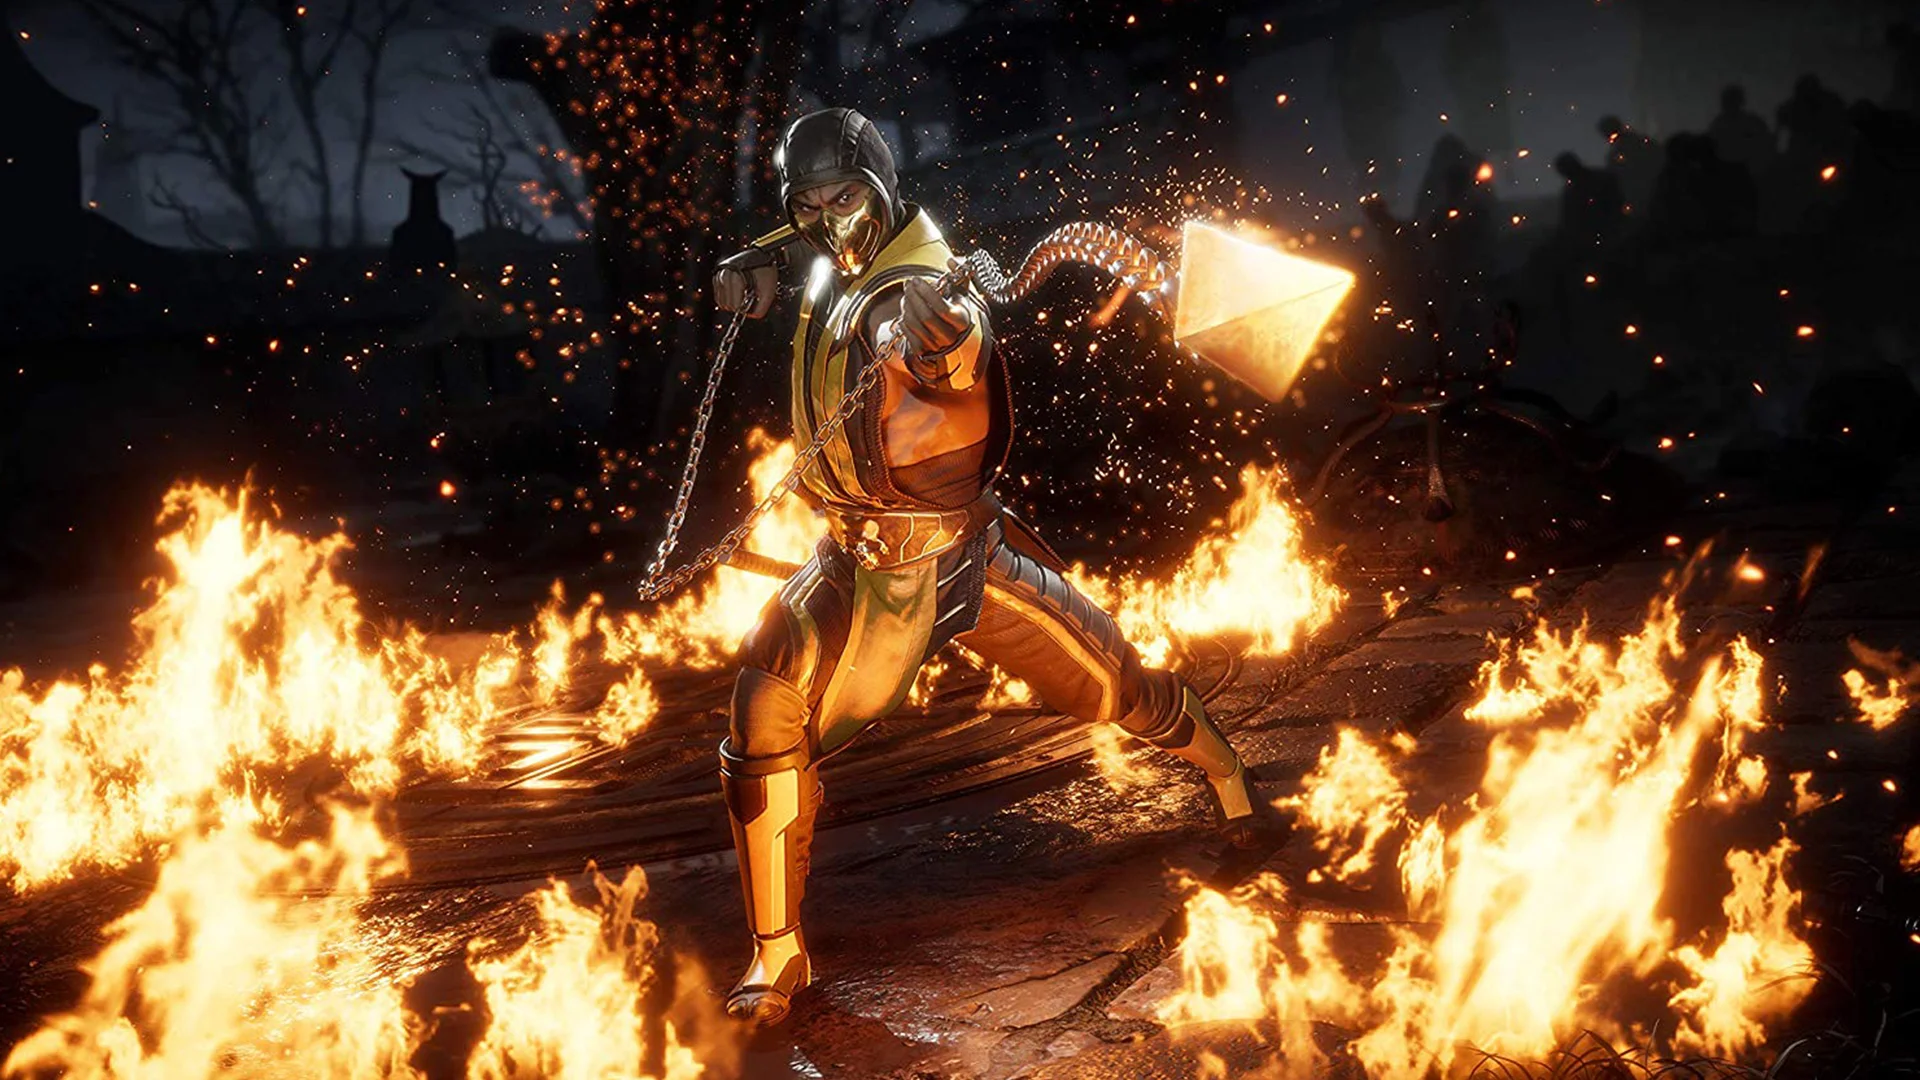 Моддер убрал из Mortal Kombat 11 ограничение в 30 FPS во время фатальных ударов и фаталити - фото 1